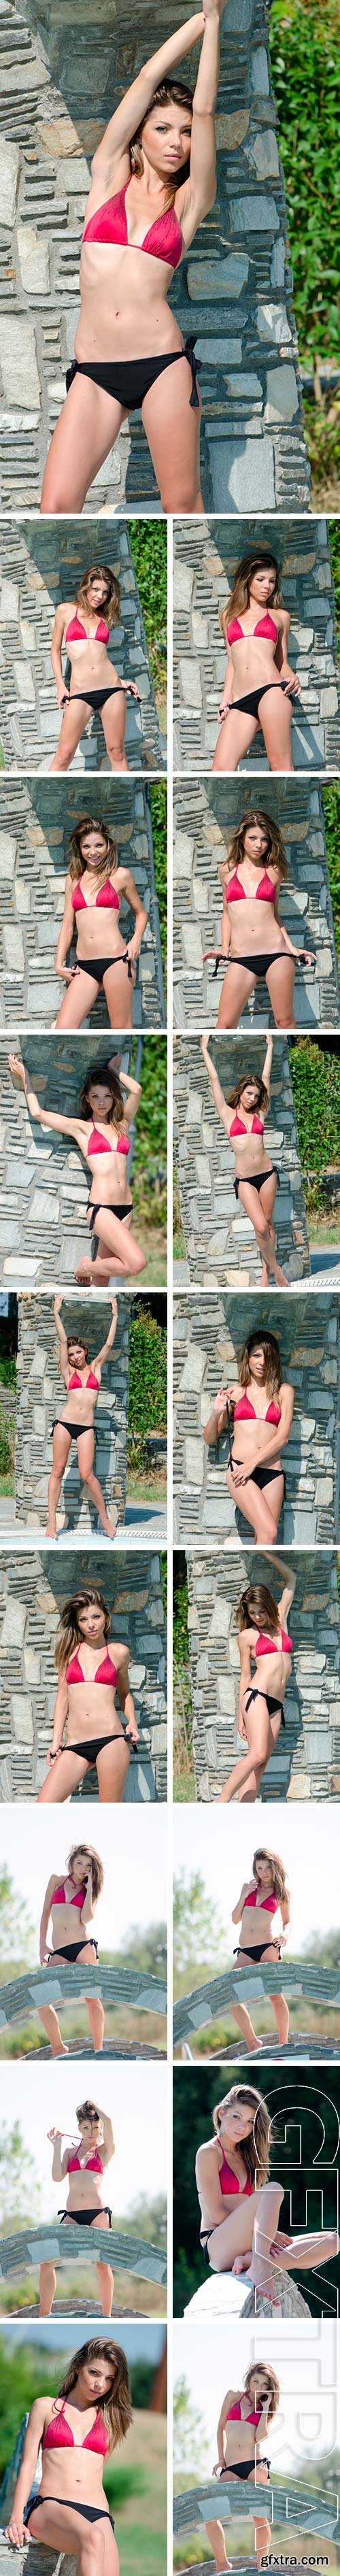 Stock Photos - Ex Greek beauty pageant winner in bikini